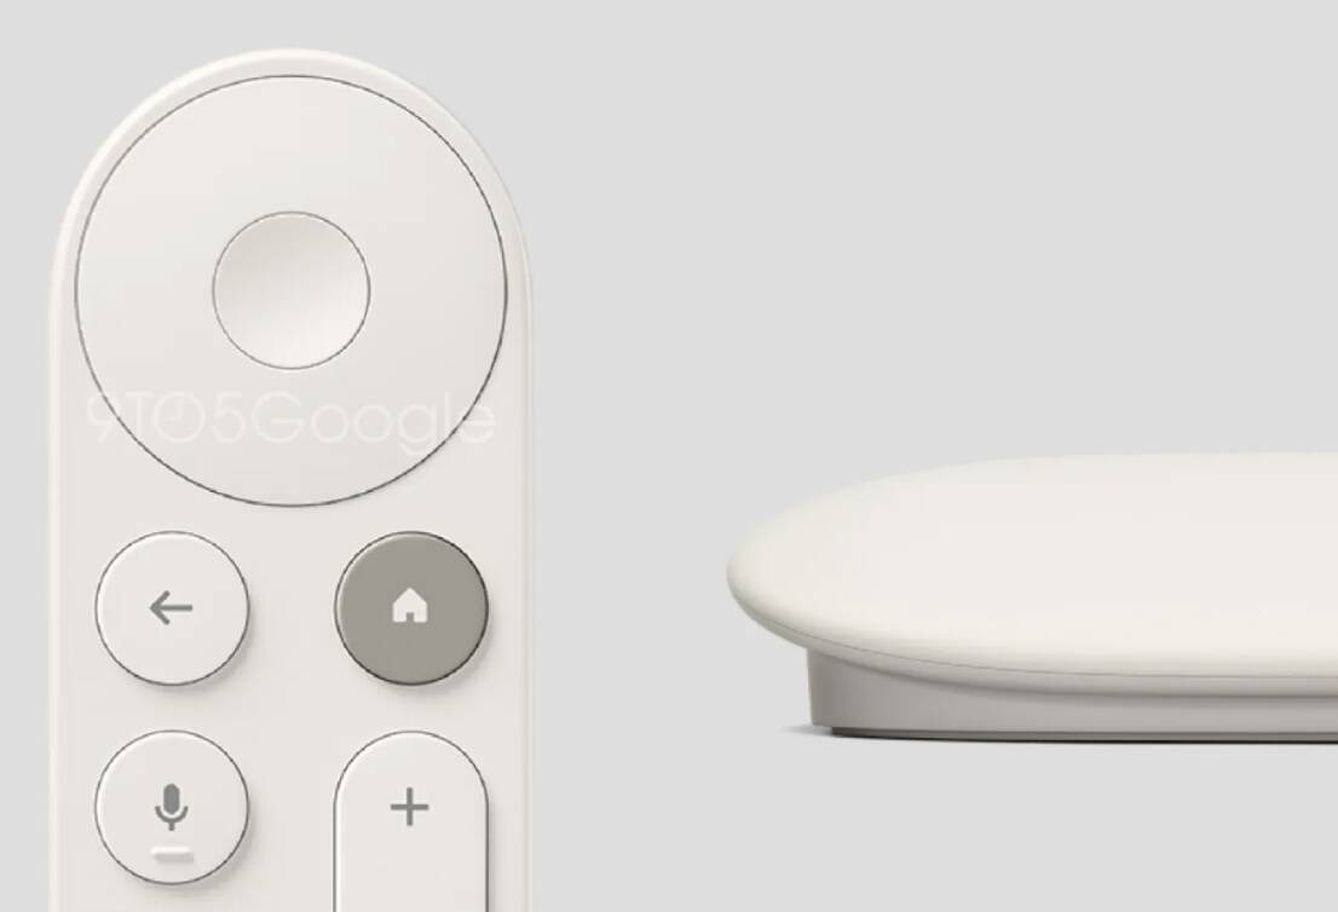 Así será el mando a distancia del nuevo Chromecast (9to5Google)